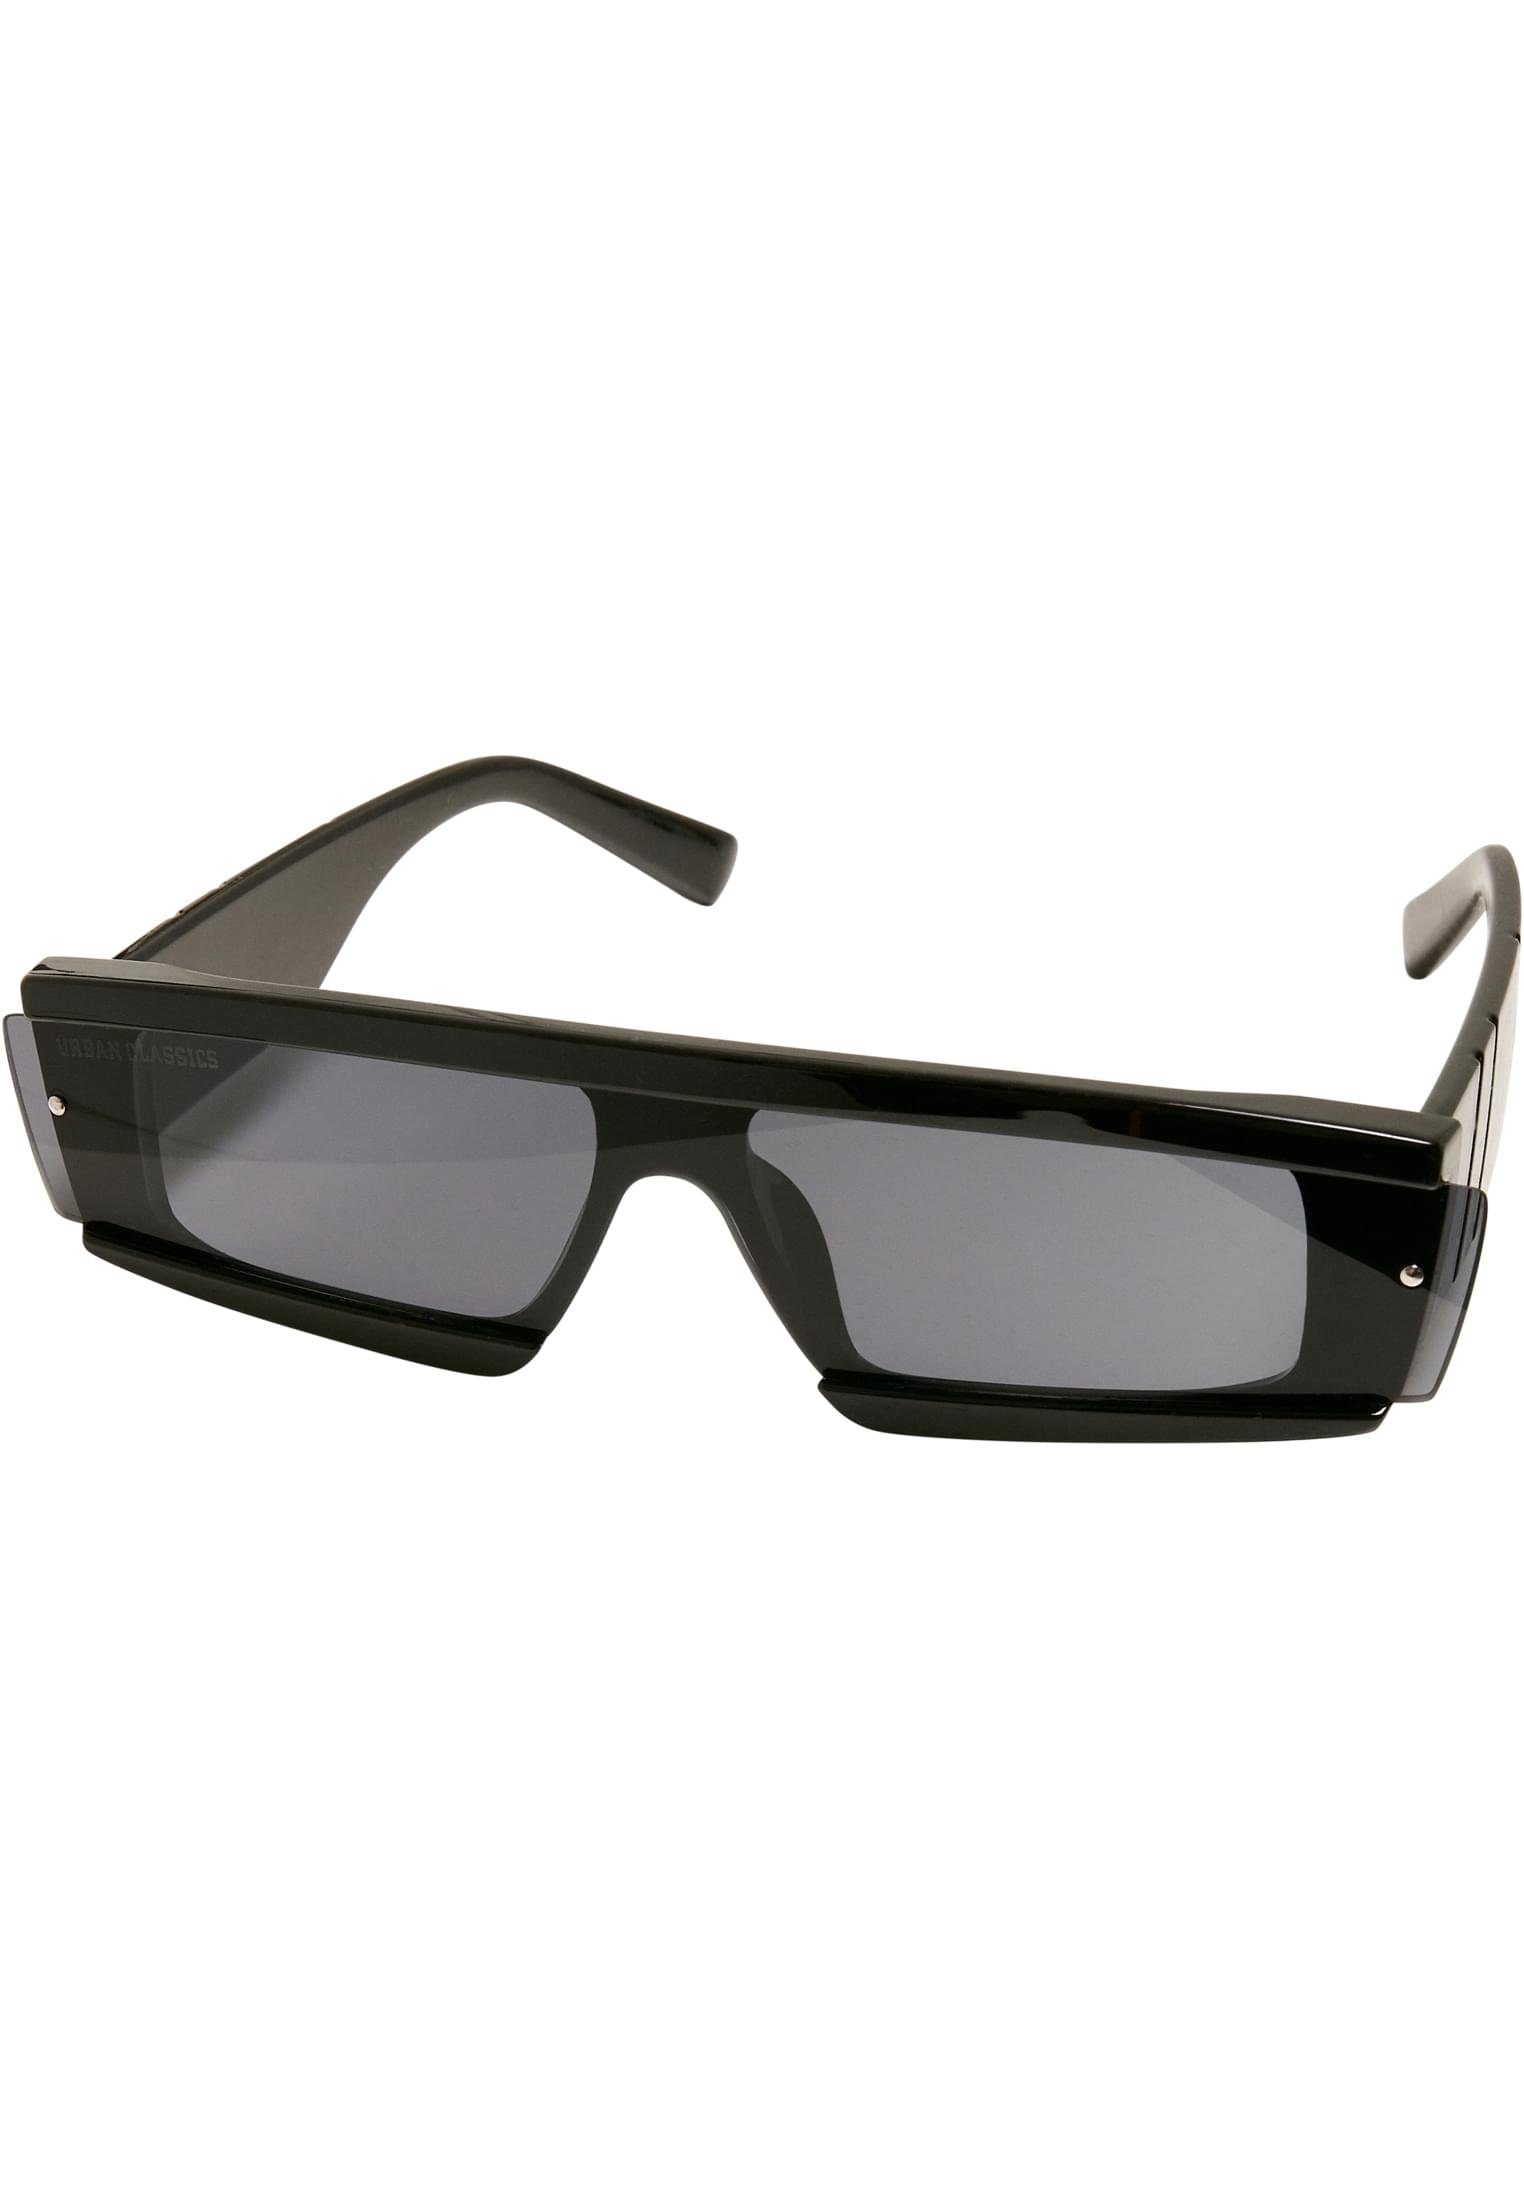 URBAN CLASSICS Sonnenbrille Unisex Sunglasses Alabama 2-Pack, Ideal auch  für Sport im Freien geeignet